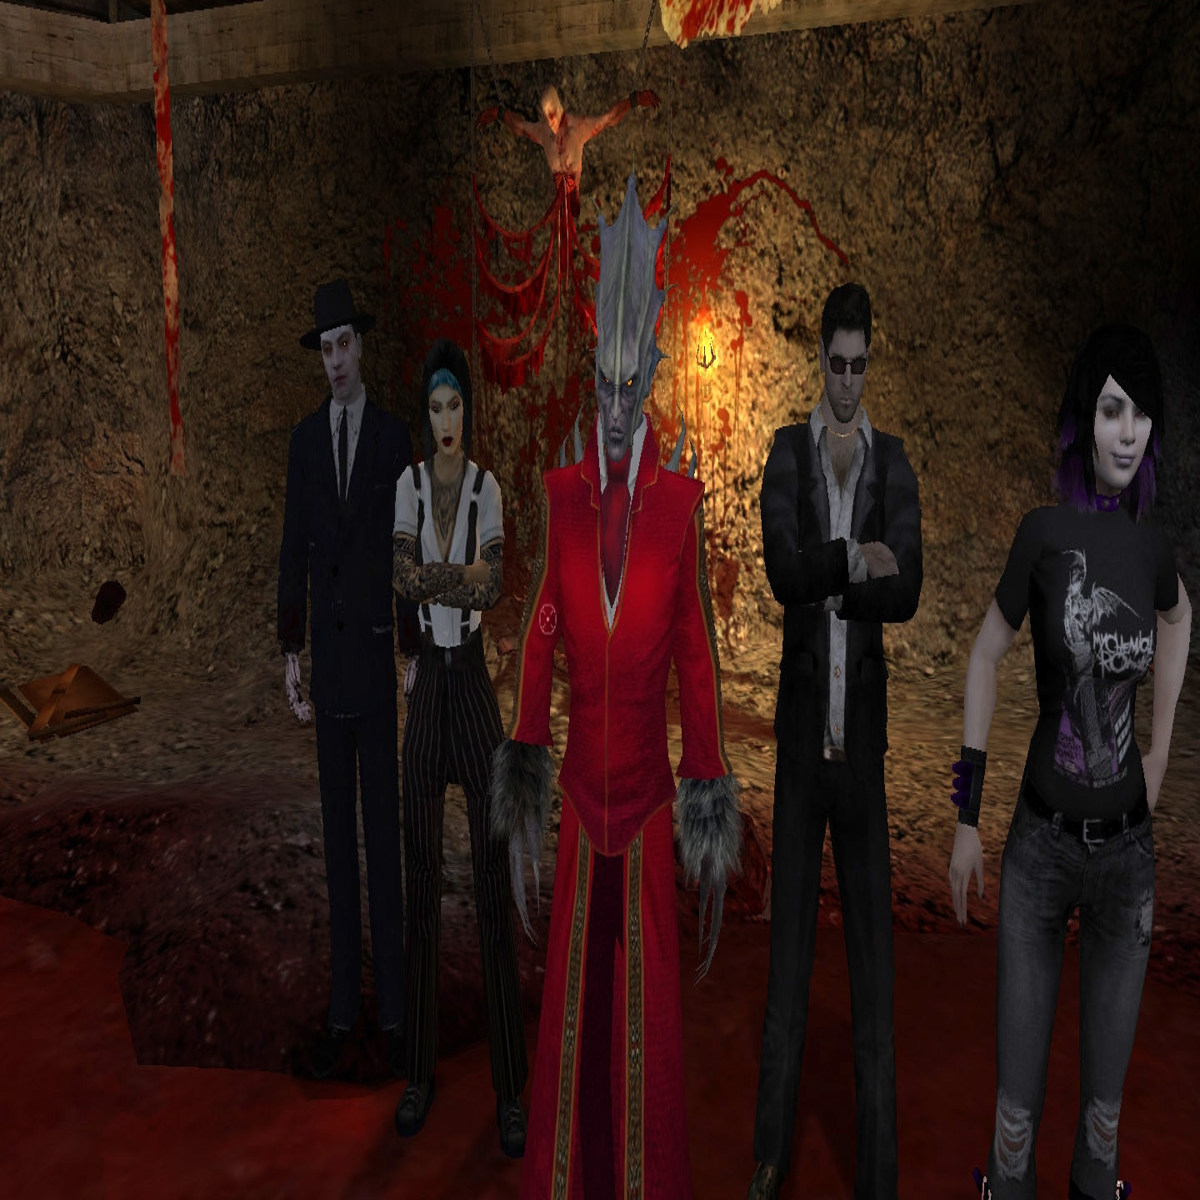 Steam Workshop::Vampire: The Masquerade - Bloodlines